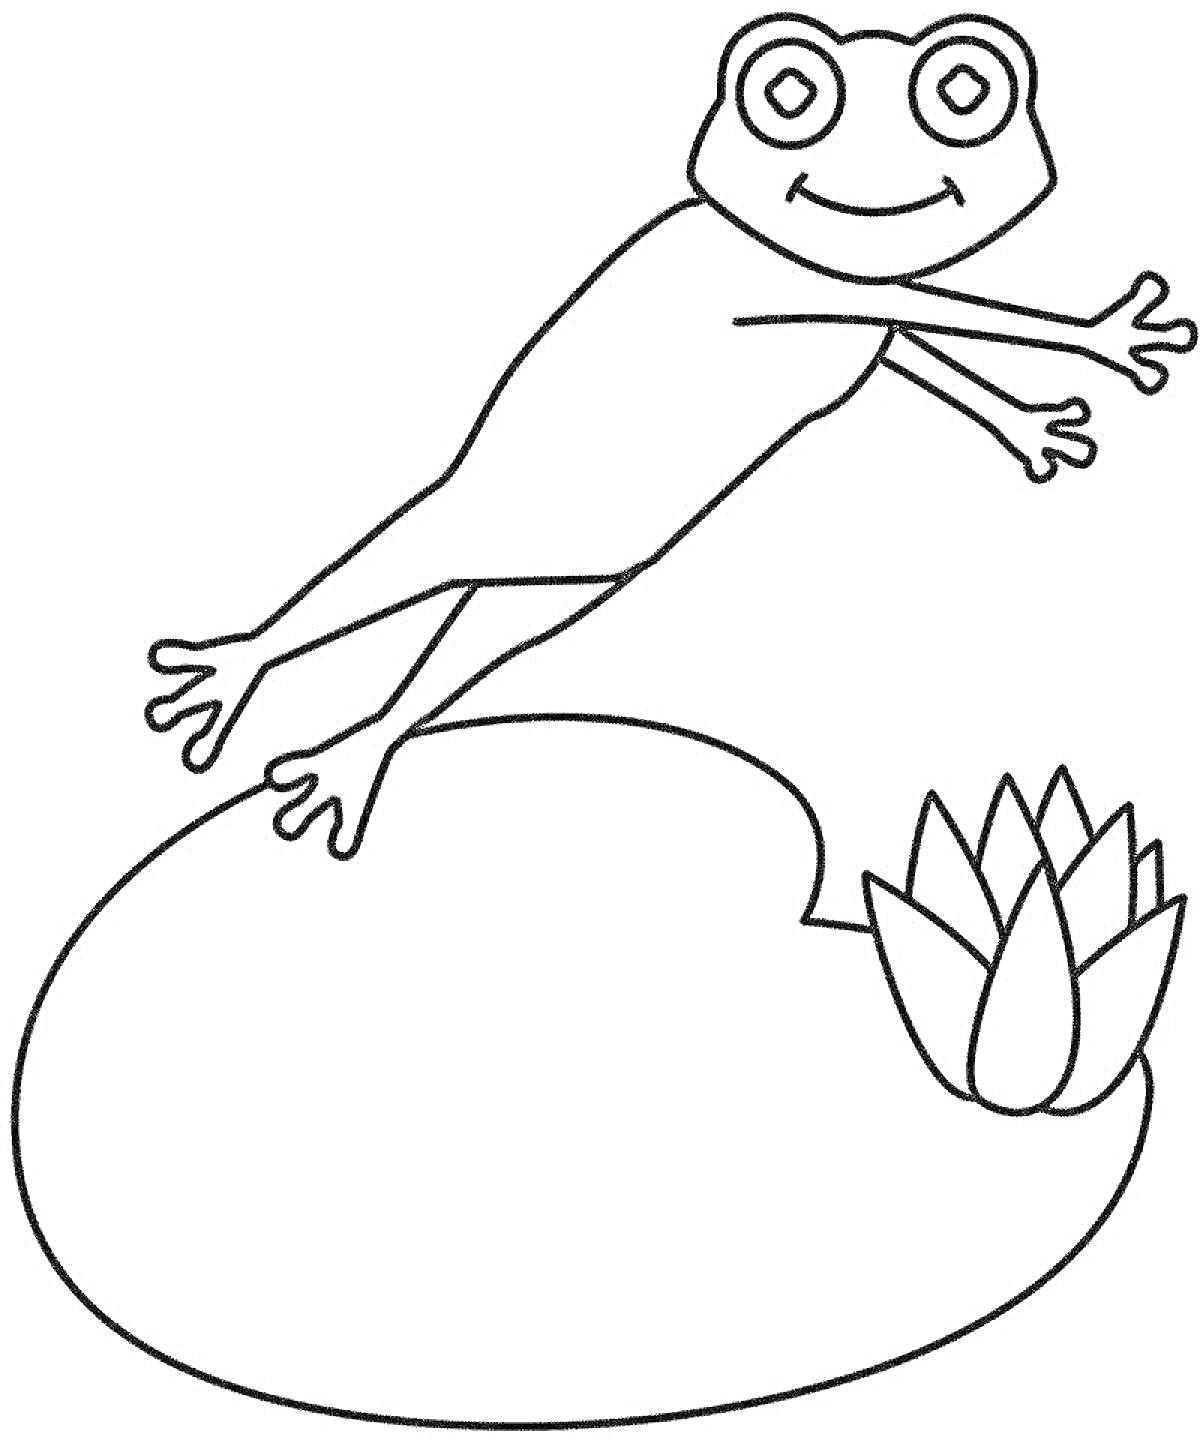 Раскраска Лягушка путешественница прыгает с кувшинки рядом с цветком